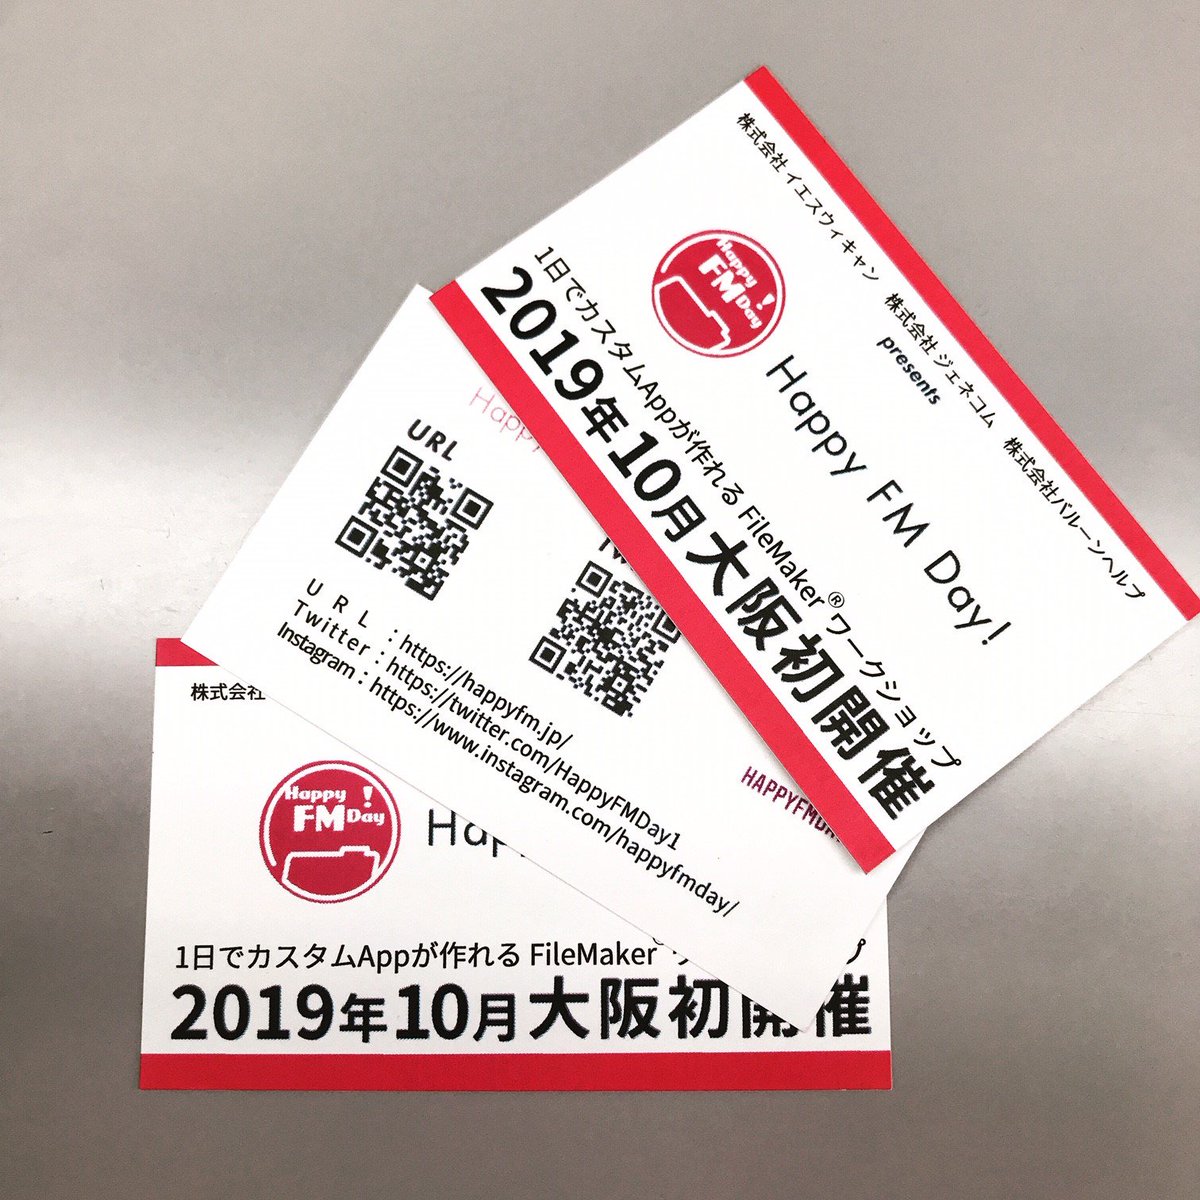 21年1月26日オンラインセミナー Happy Fm Day Filemaker Road Show 大阪開催 ご参加ありがとうございました ショウケース会場のバルーンヘルプ ジェネコム イエスウィキャンのブースではこんなカードを配ってました 手に入れましたか 艸